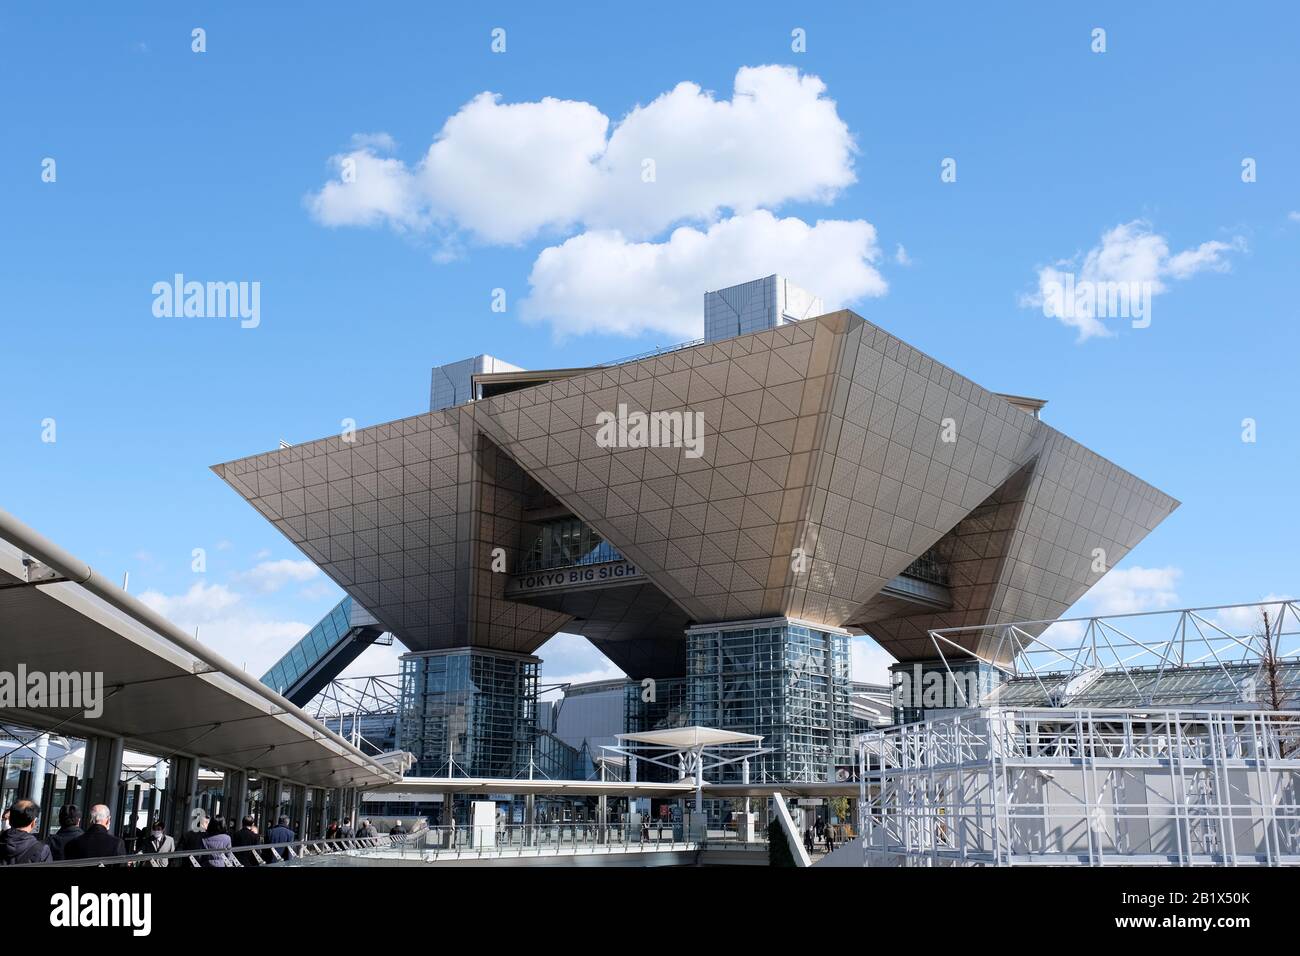 Februar 2020: Tokyo Big Sight, ein Veranstaltungsort für das International Broadcast Center (IBC) und das Media Press Center (MPC) bei den Olympischen Spielen in Tokio 2020. Credit: Yohei Osada/AFLO SPORT/Alamy Live News Stockfoto